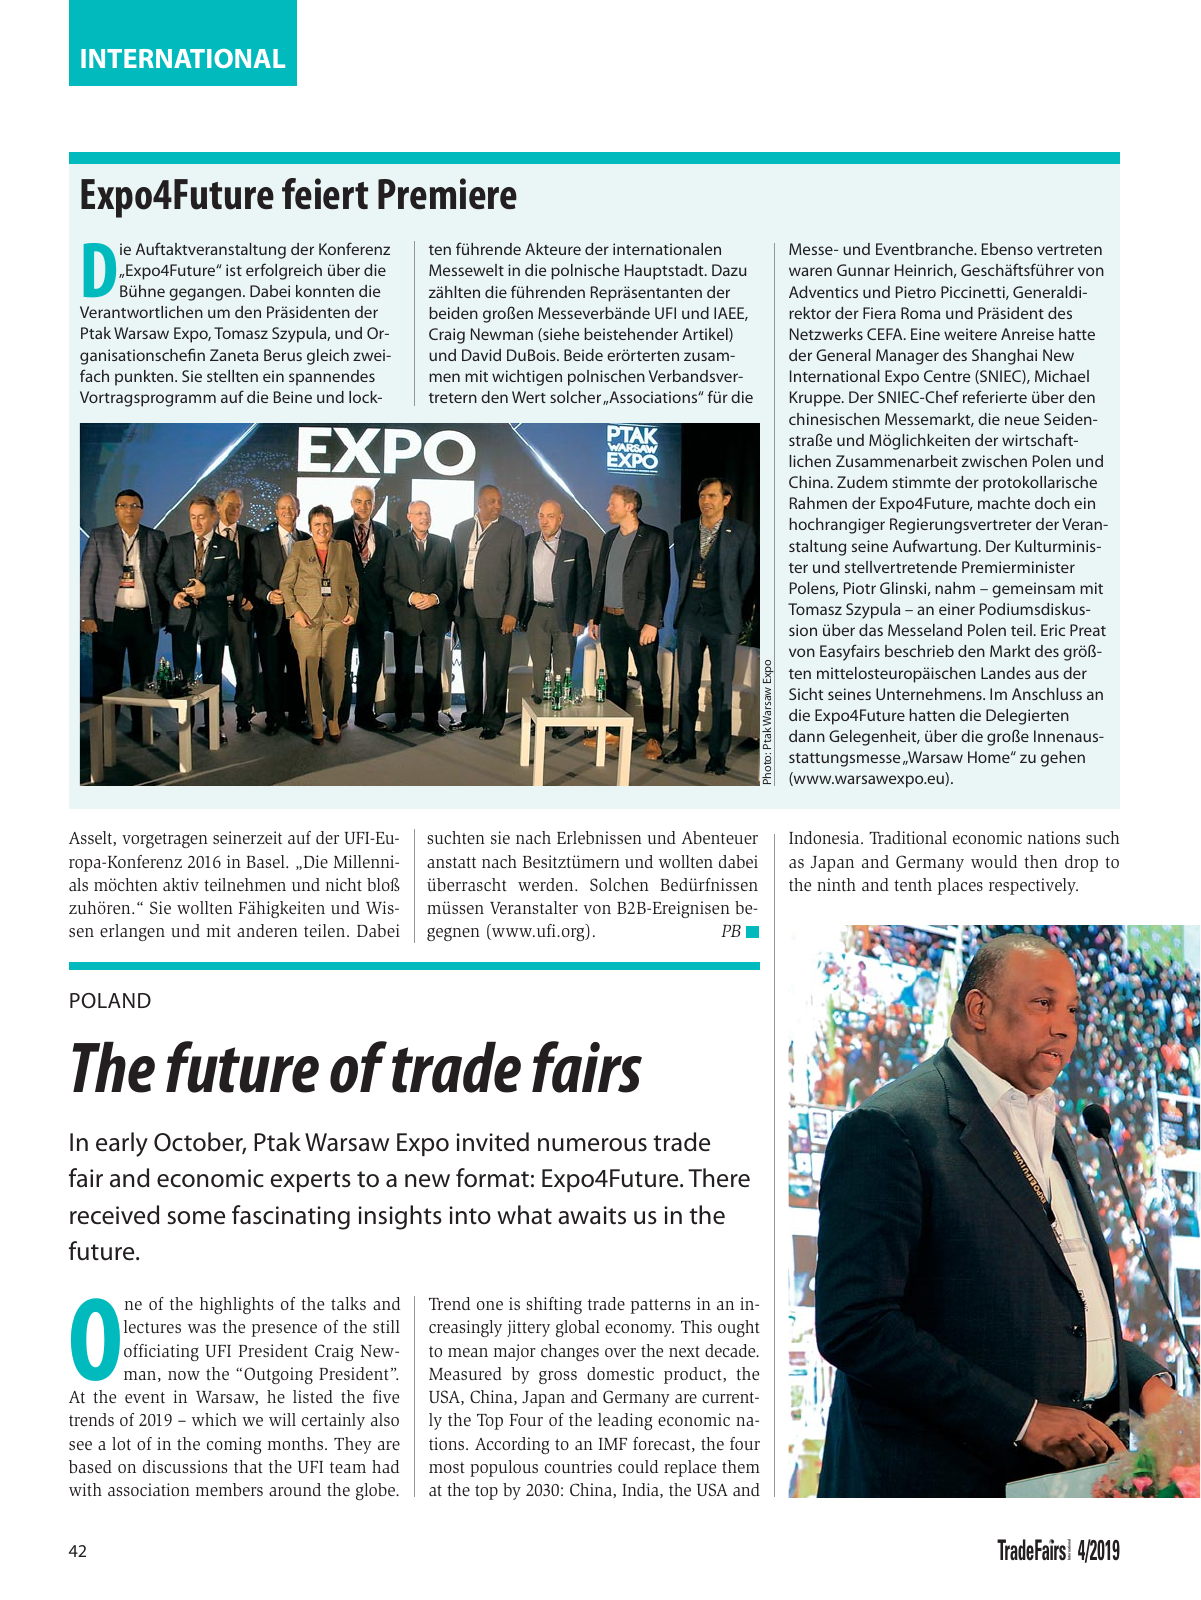 Vorschau TFI Trade-Fairs-International 04/2019 Seite 42